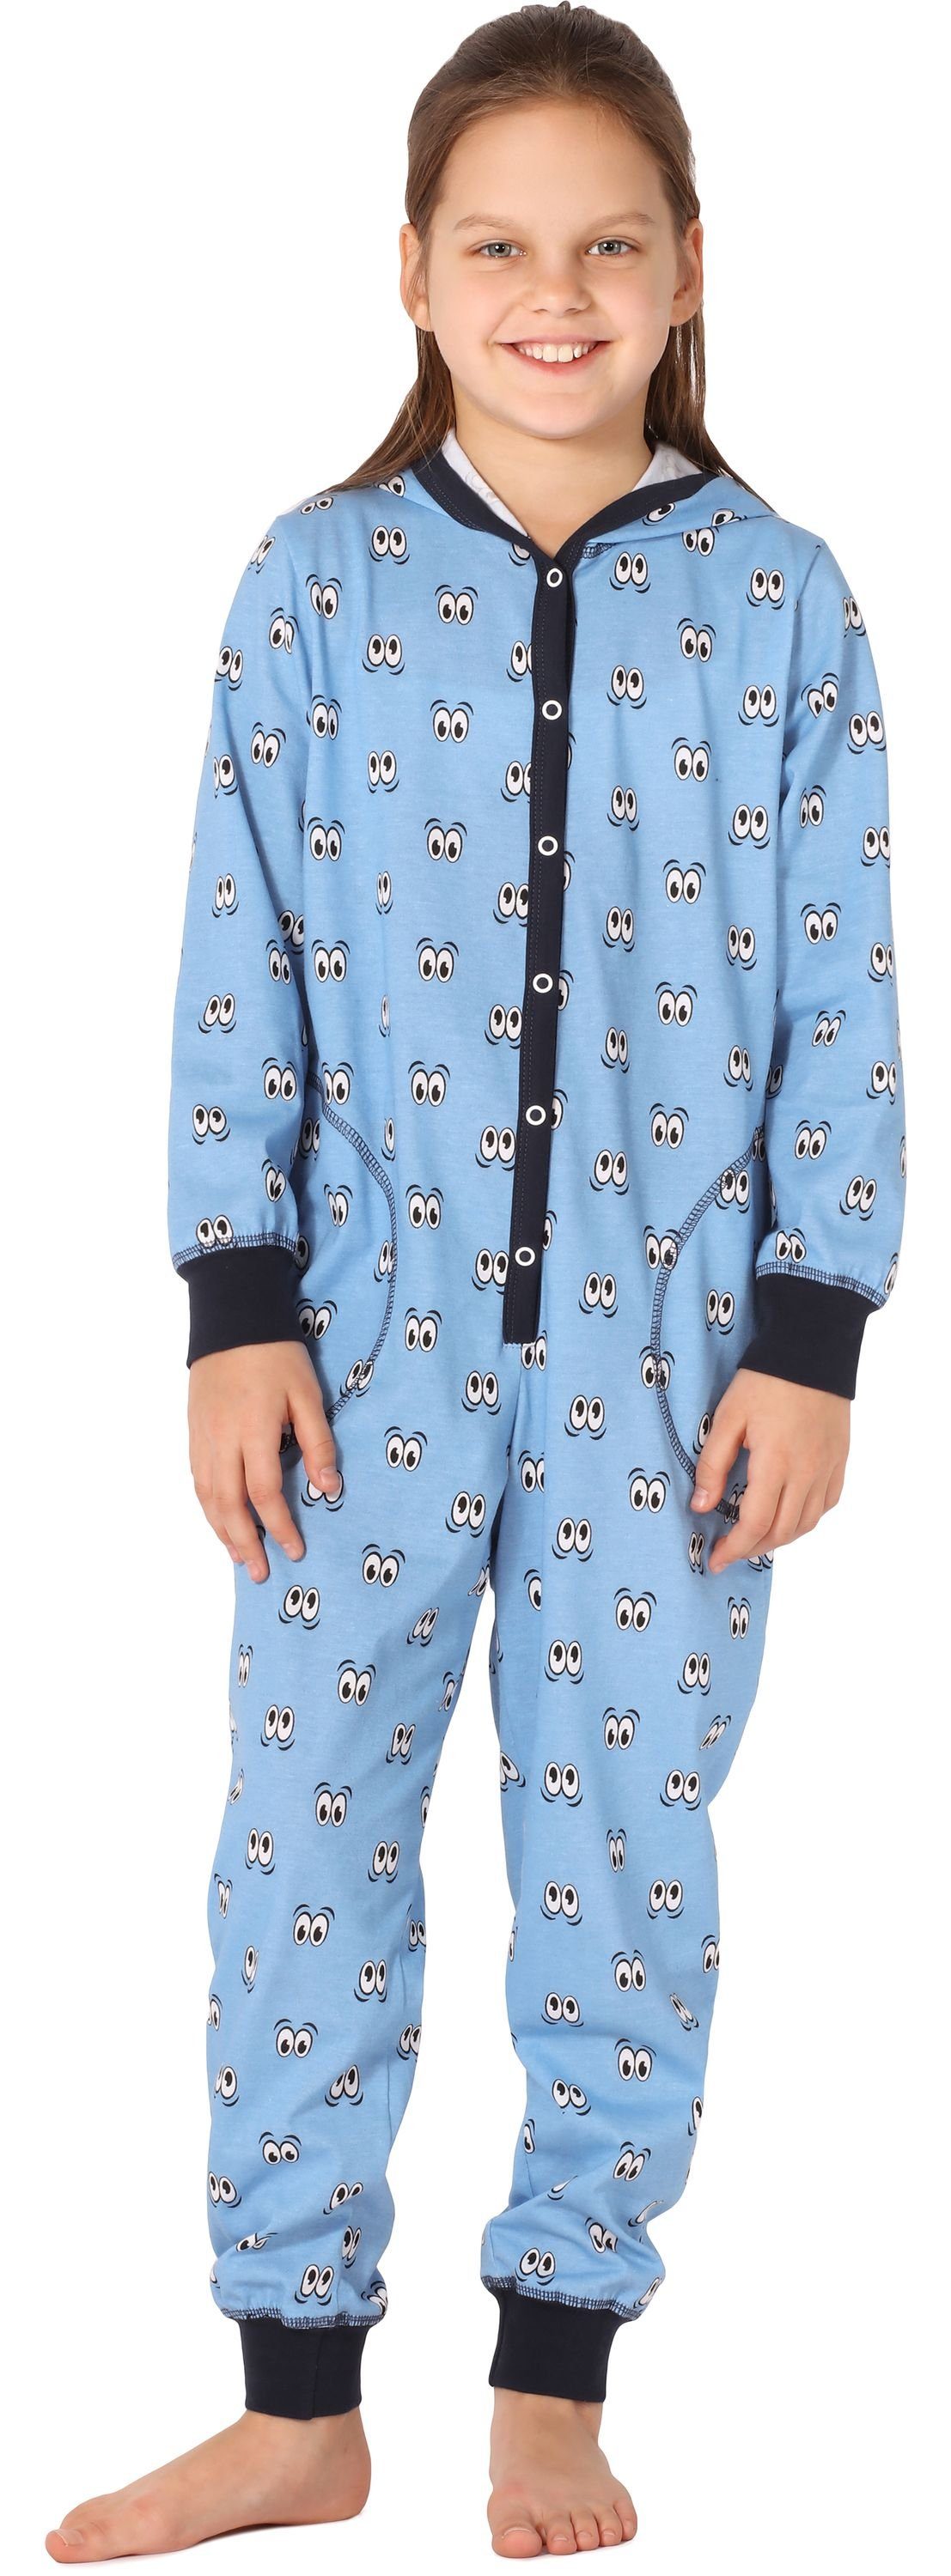 MS10-223 Style Schlafoverall Mädchen mit Kapuze Blau Schlafanzug Augen Merry